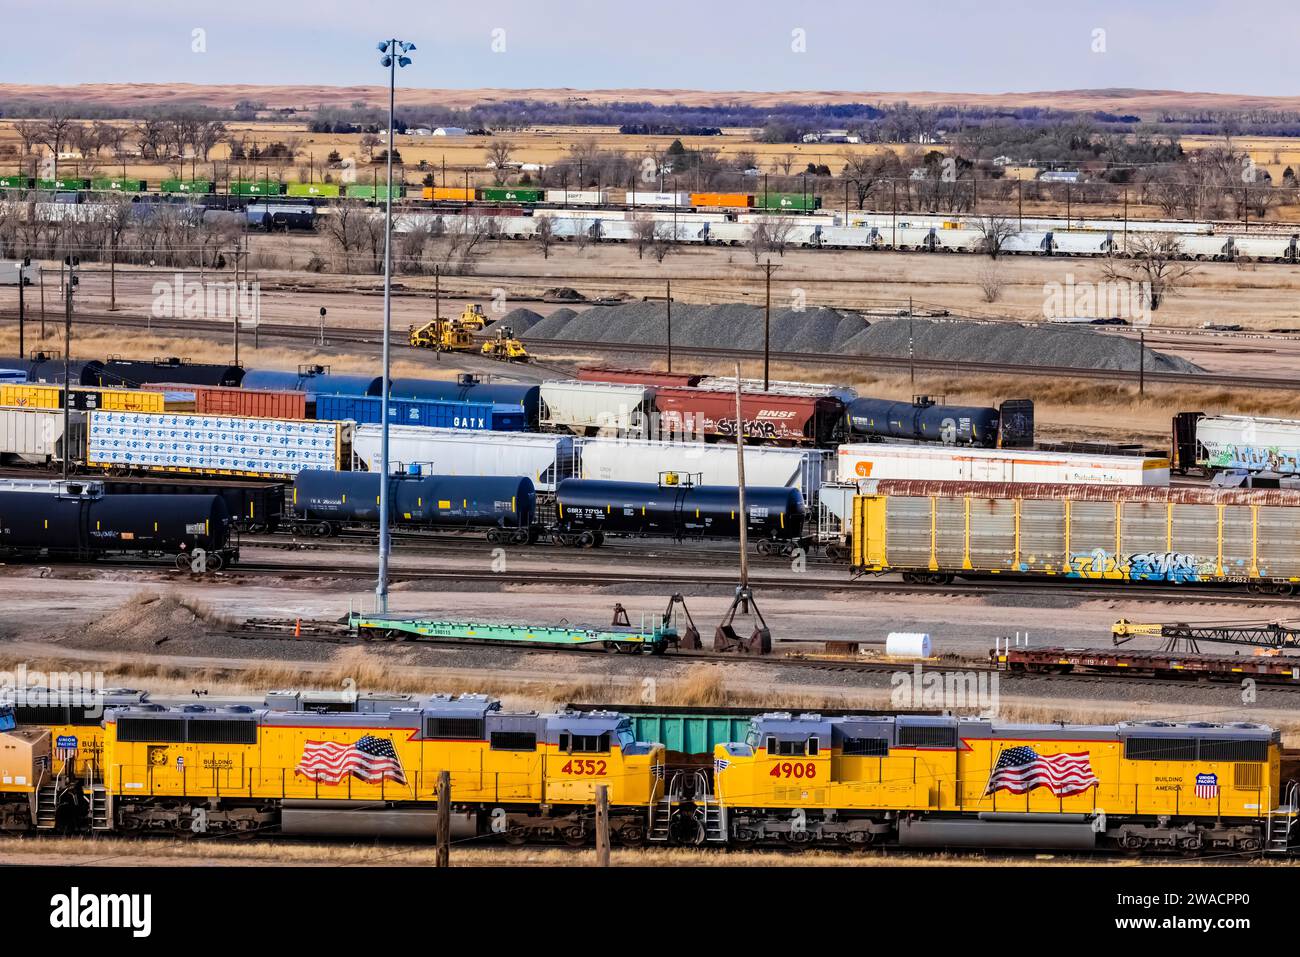 Bailey Yard, le plus grand triage ferroviaire au monde, Union Pacific Railroad, North Platte, Nebraska, USA [aucune autorisation de propriété ; licences éditoriales Banque D'Images